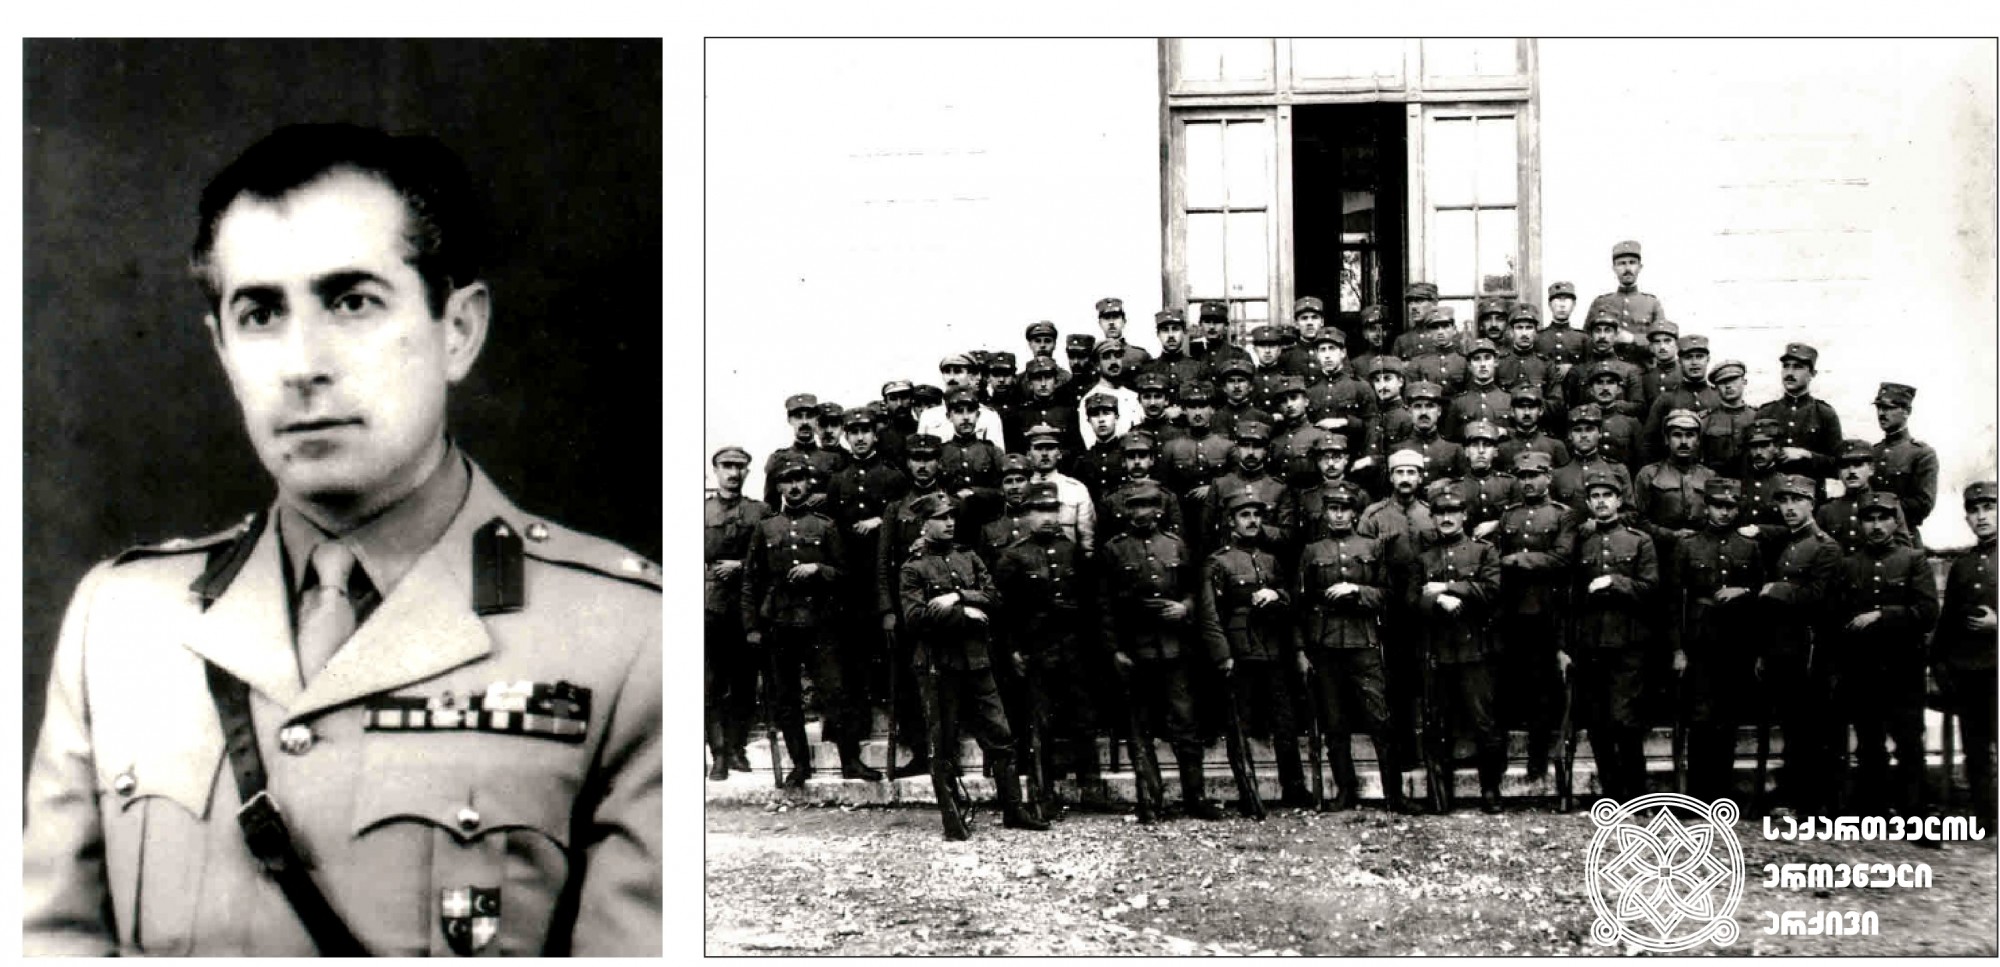 ბერძენი გენერალი მიხეილ კალიღერისი. <br>
ათენი. <br>
Greek General Michael Caligheris. <br>
Athens. <br>

ქართველი იუნკრები საბერძნეთის ოფიცერთა სასწავლებელში. <br>
1921 წლის თებერვალი-ოქტომბერი. <br>
Georgian cadets at the Greek Officers' School. <br>
February-October 1921.